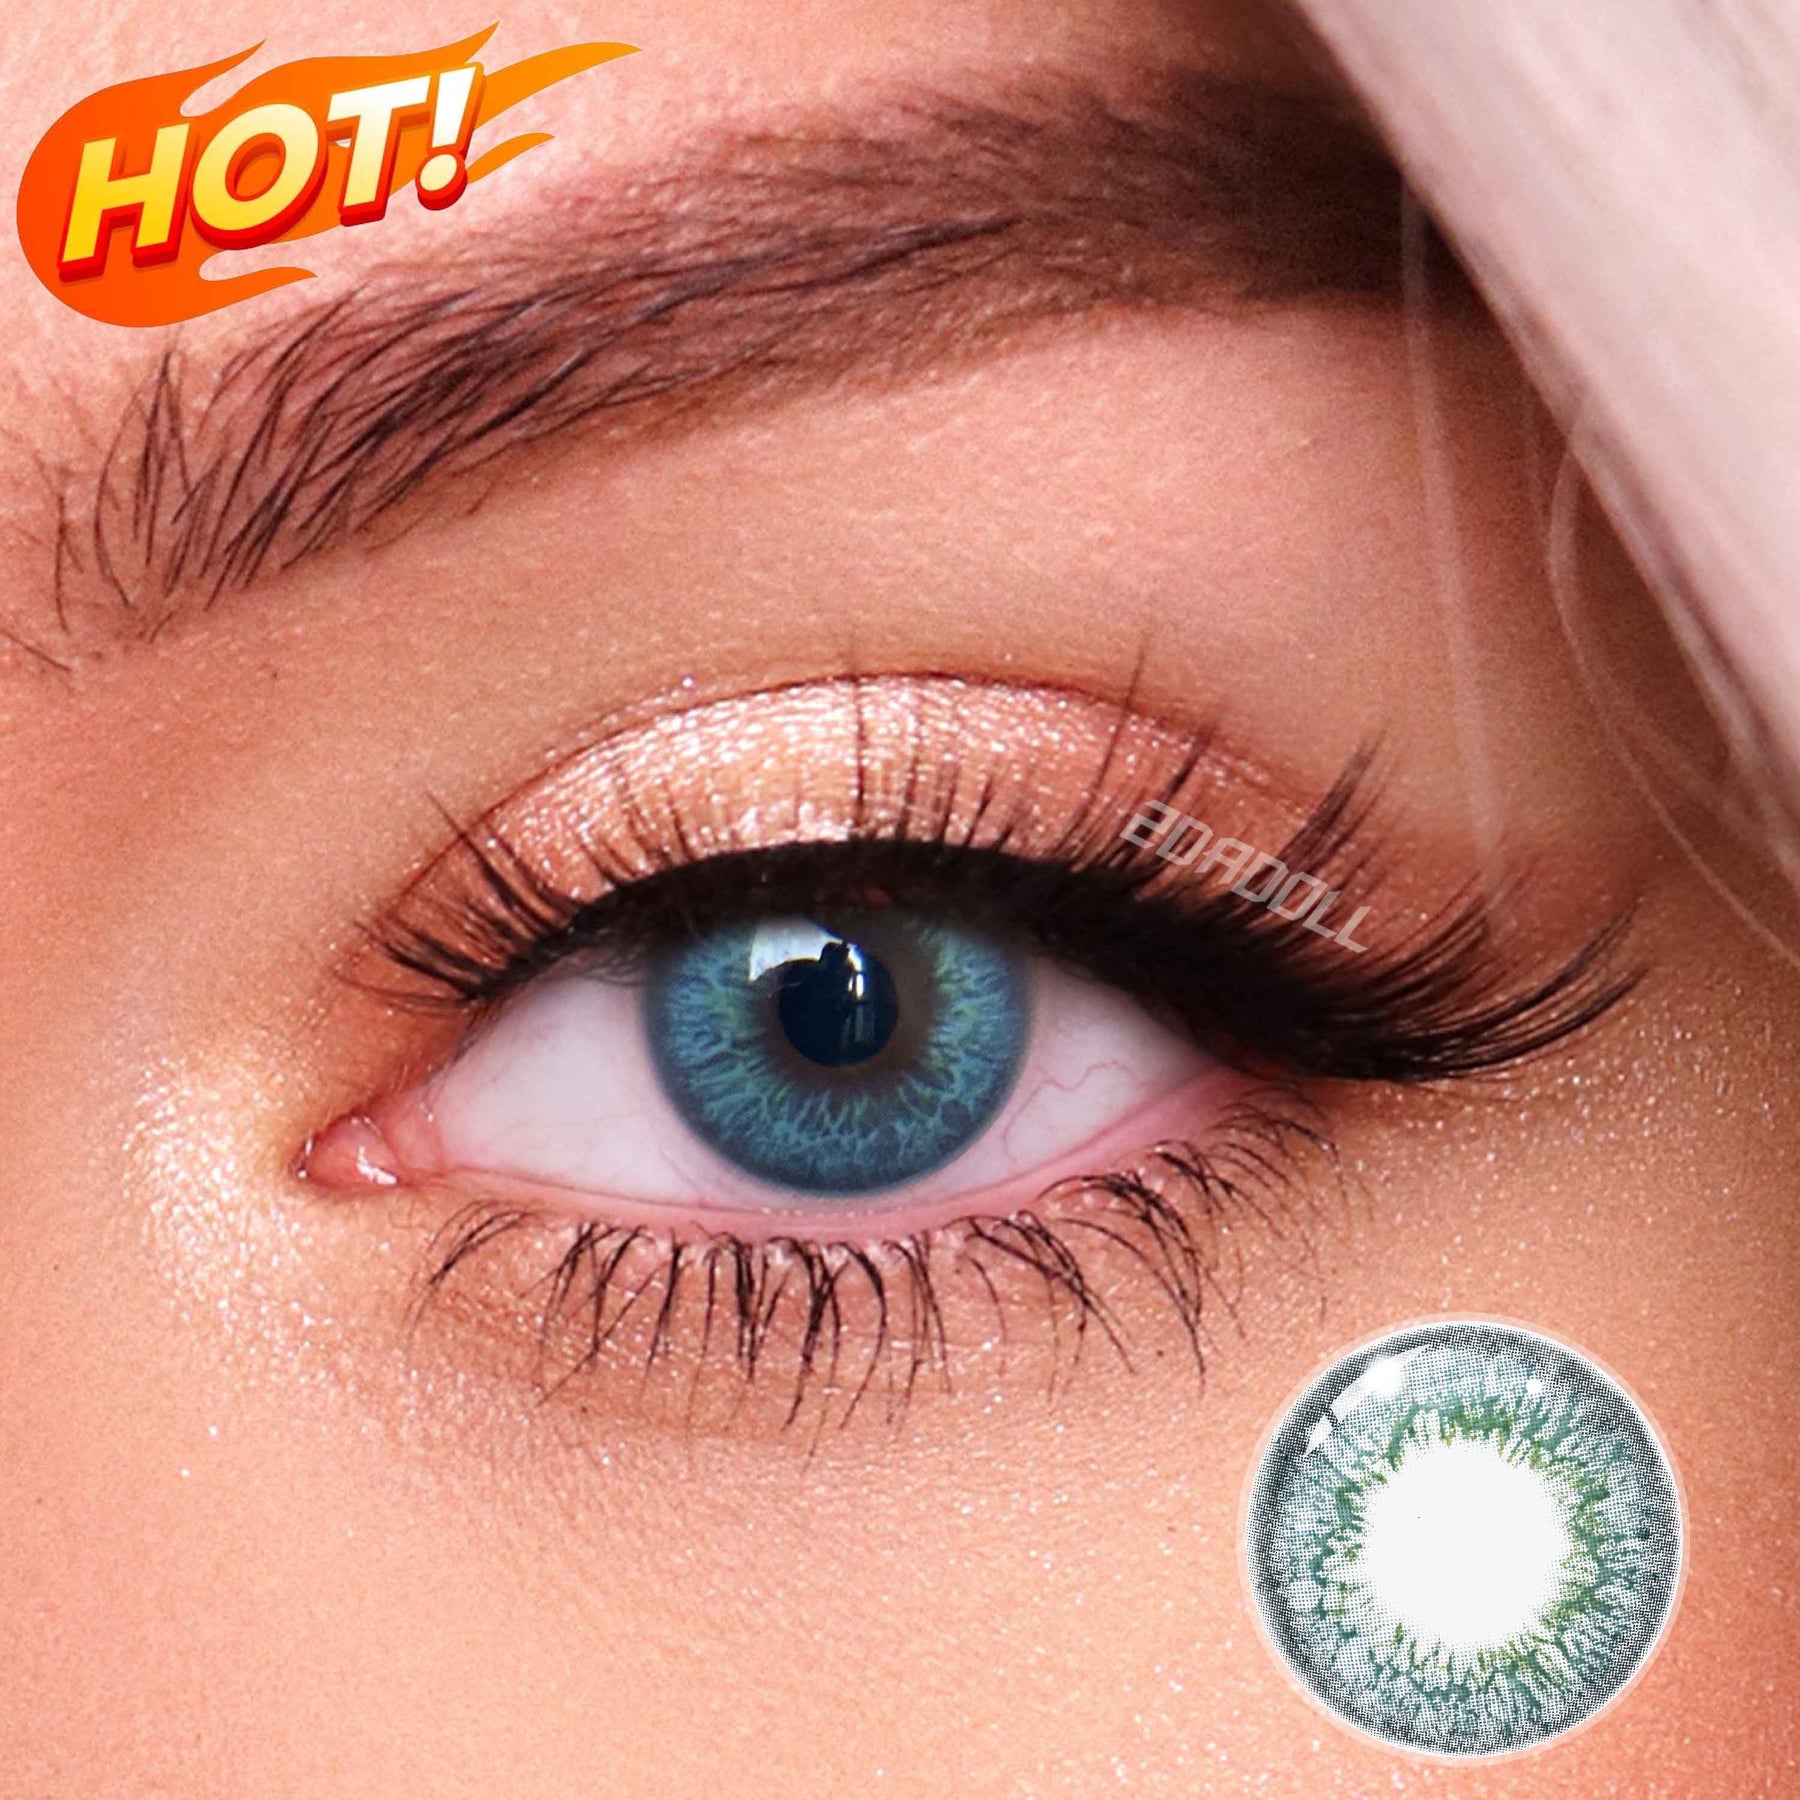 aqua contact lenses